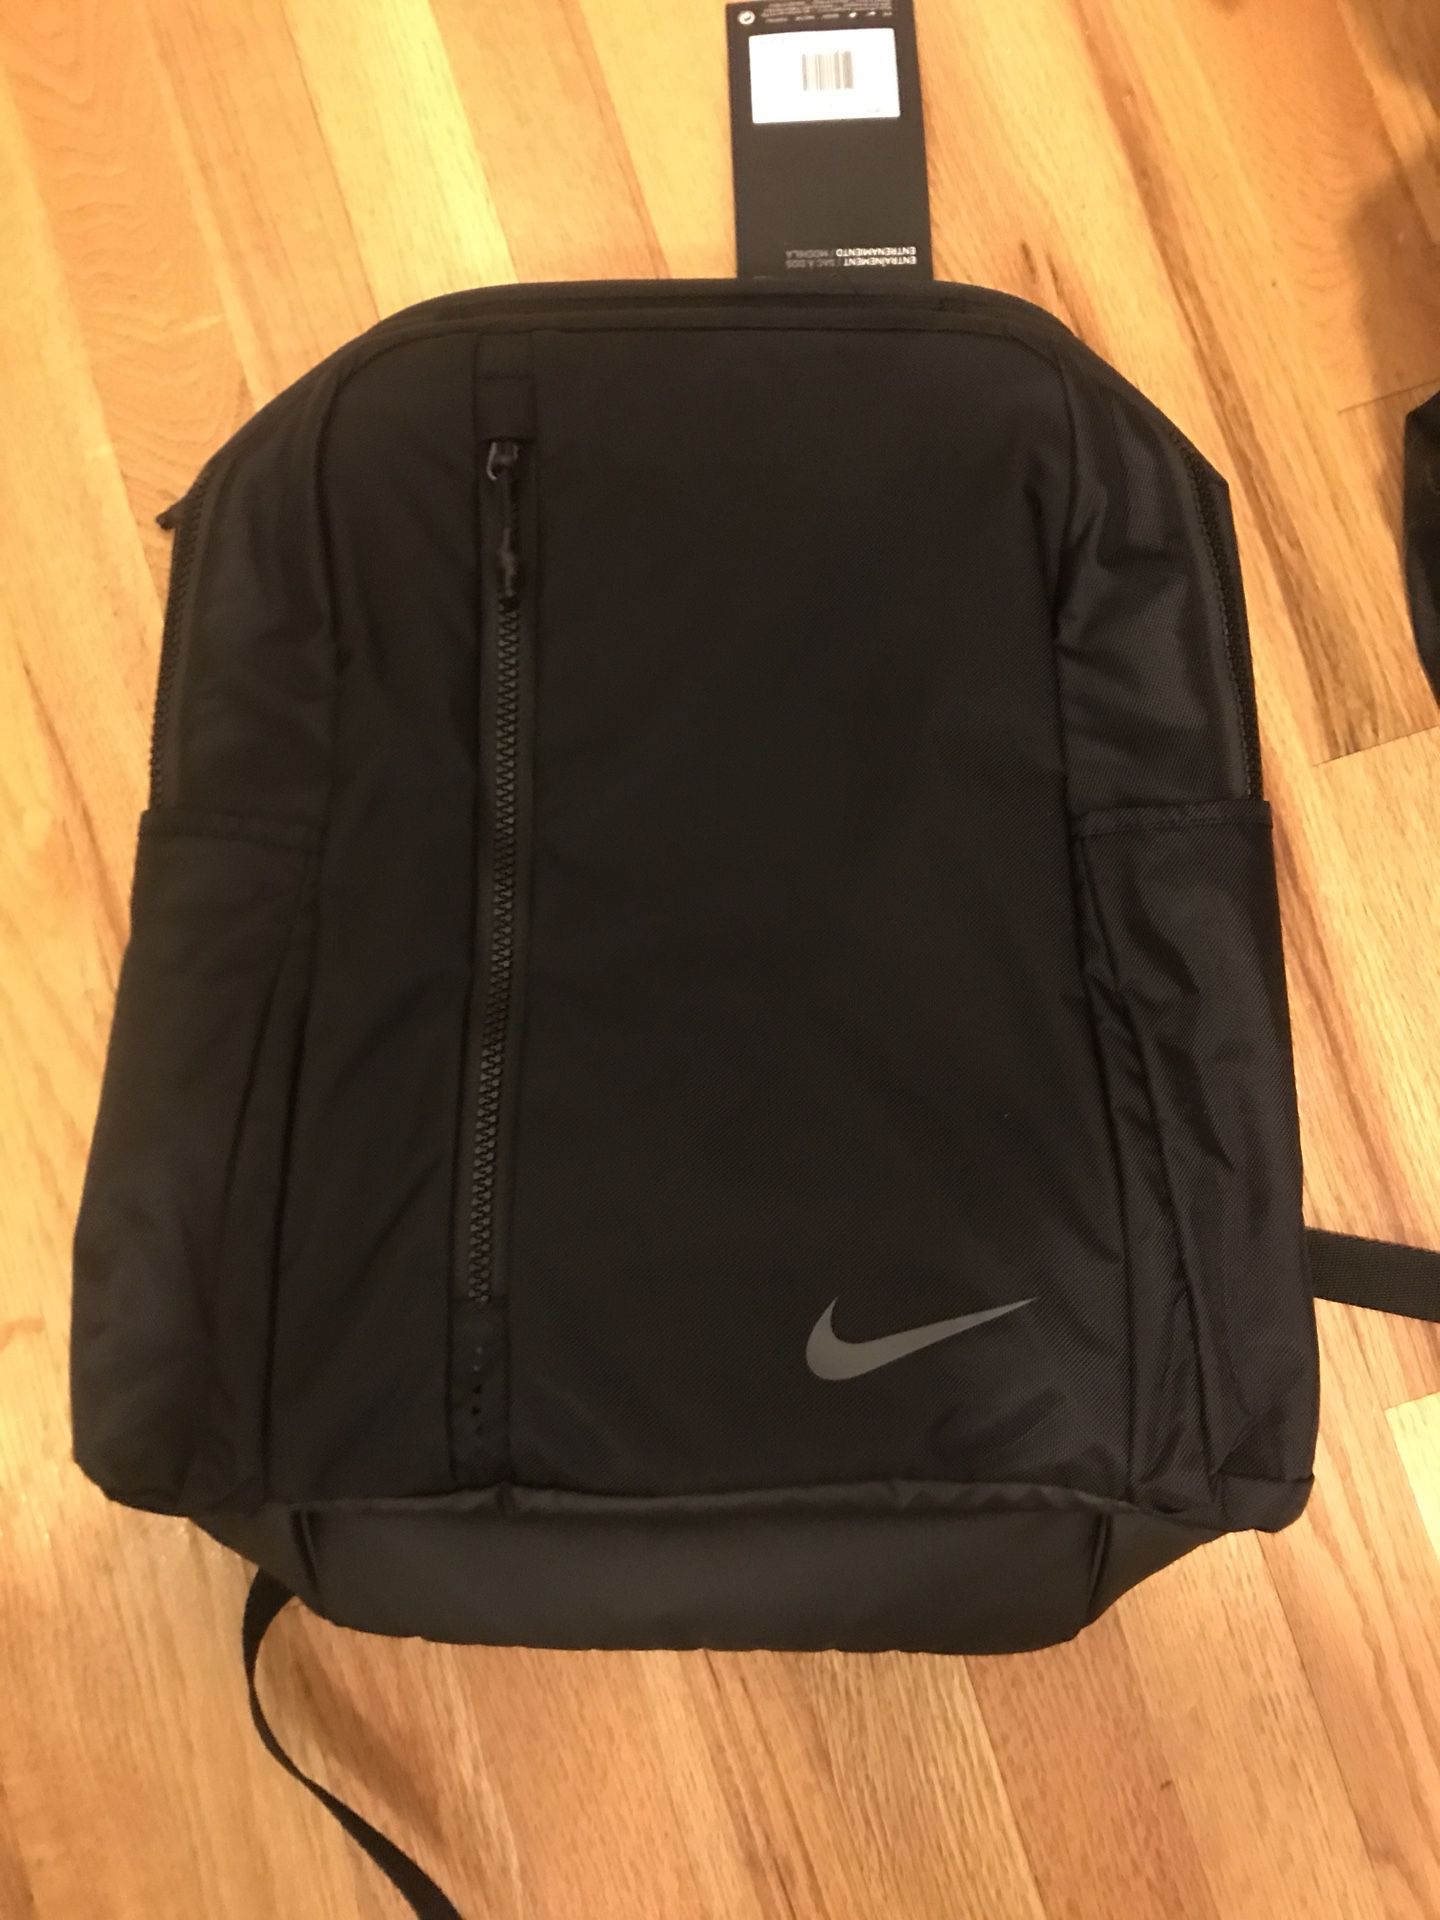 gavnlig ret Takke [NEW] Nike Vapor Power 2.0 Exercise Backpack for Sale in Portland, OR -  OfferUp